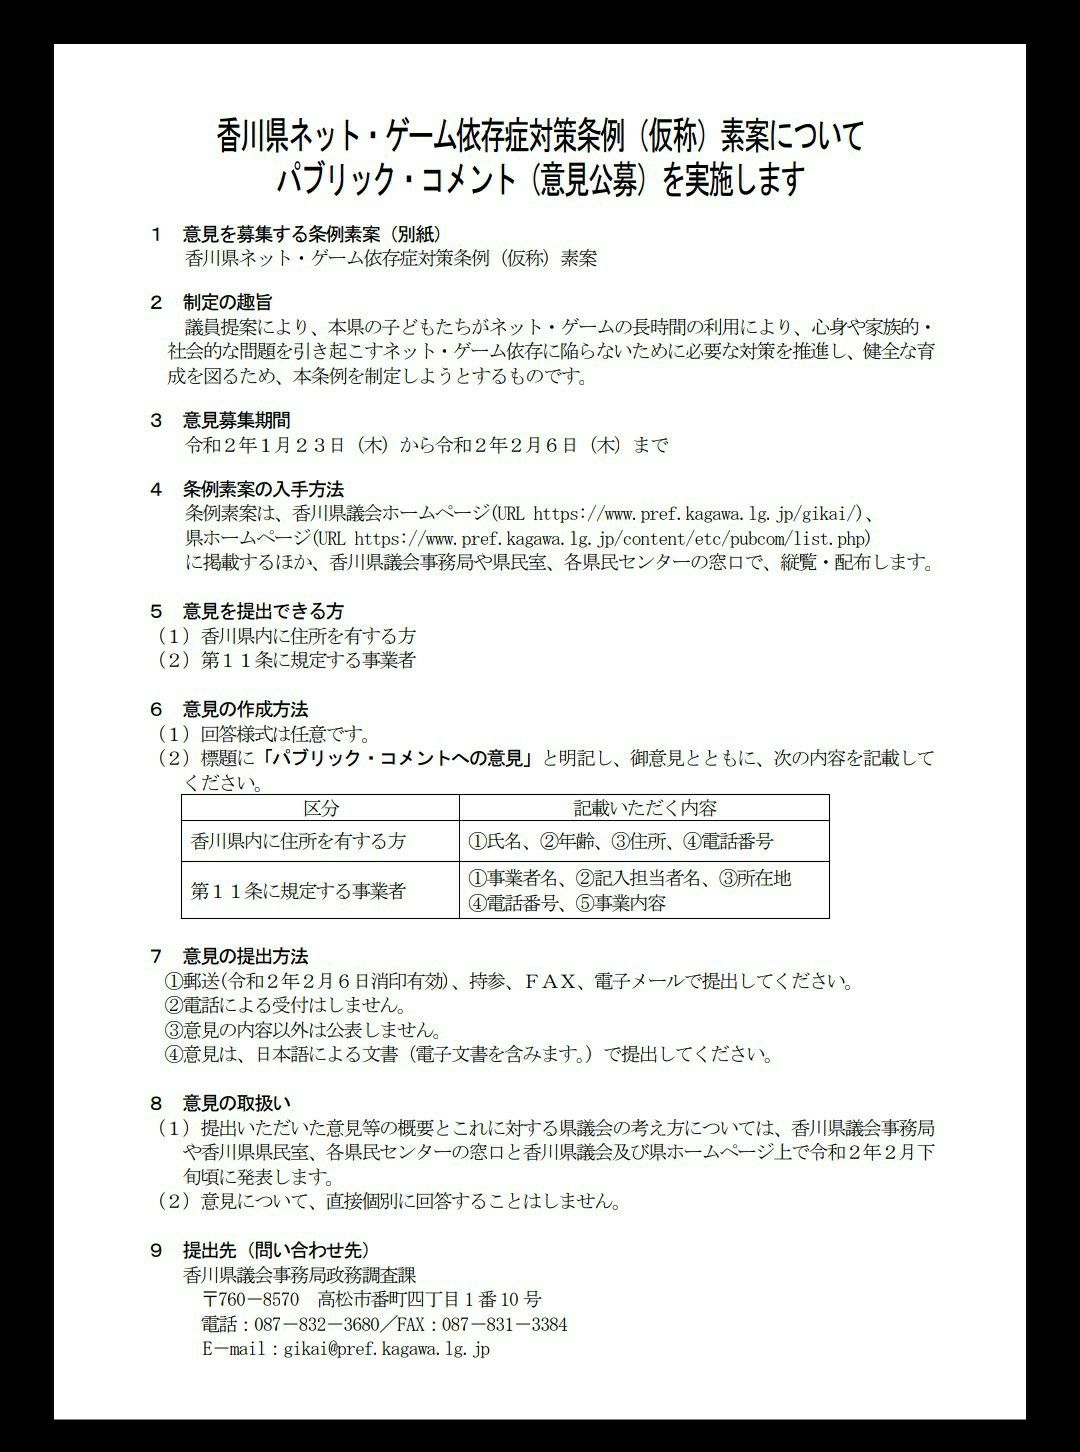 麺聖のブログ ゲーム制限条例 麺聖のうどん 歌舞伎 文楽 城 国宝 博物館 グルメの旅 ブログ版 楽天ブログ